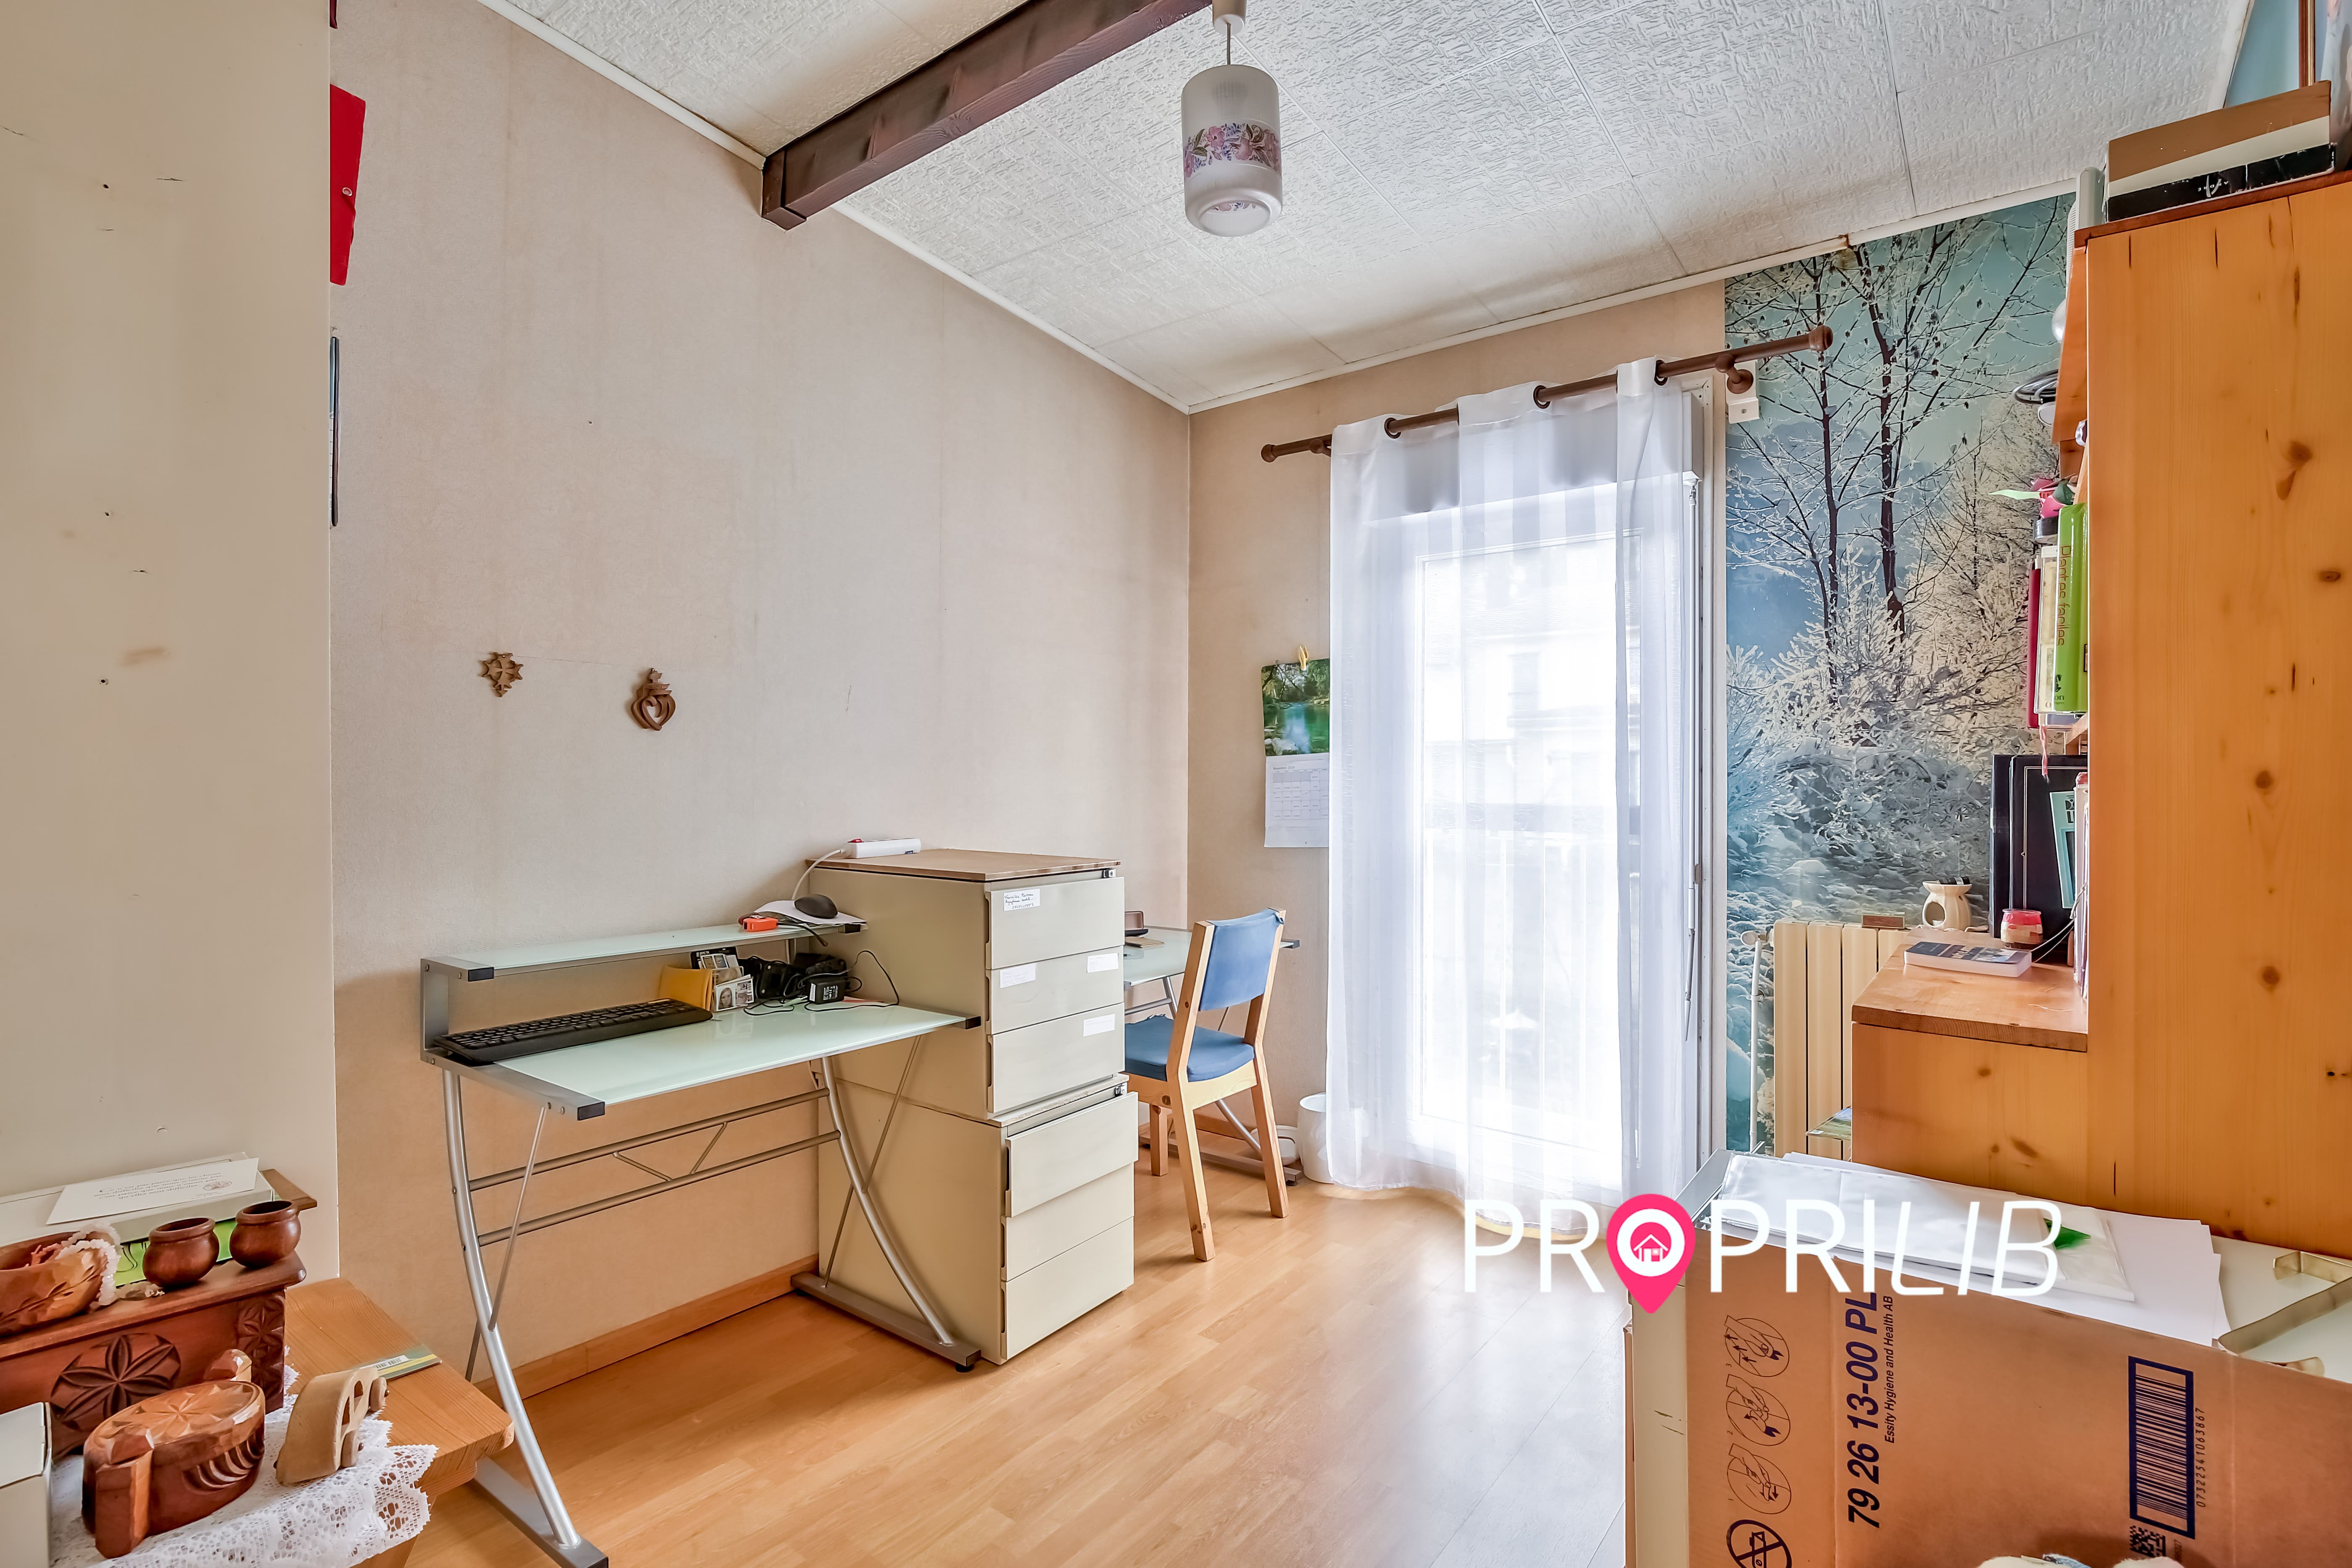 PropriLib l’agence immobilière sans commission vend cet appartement dans Saint-Quentin-Fallavier